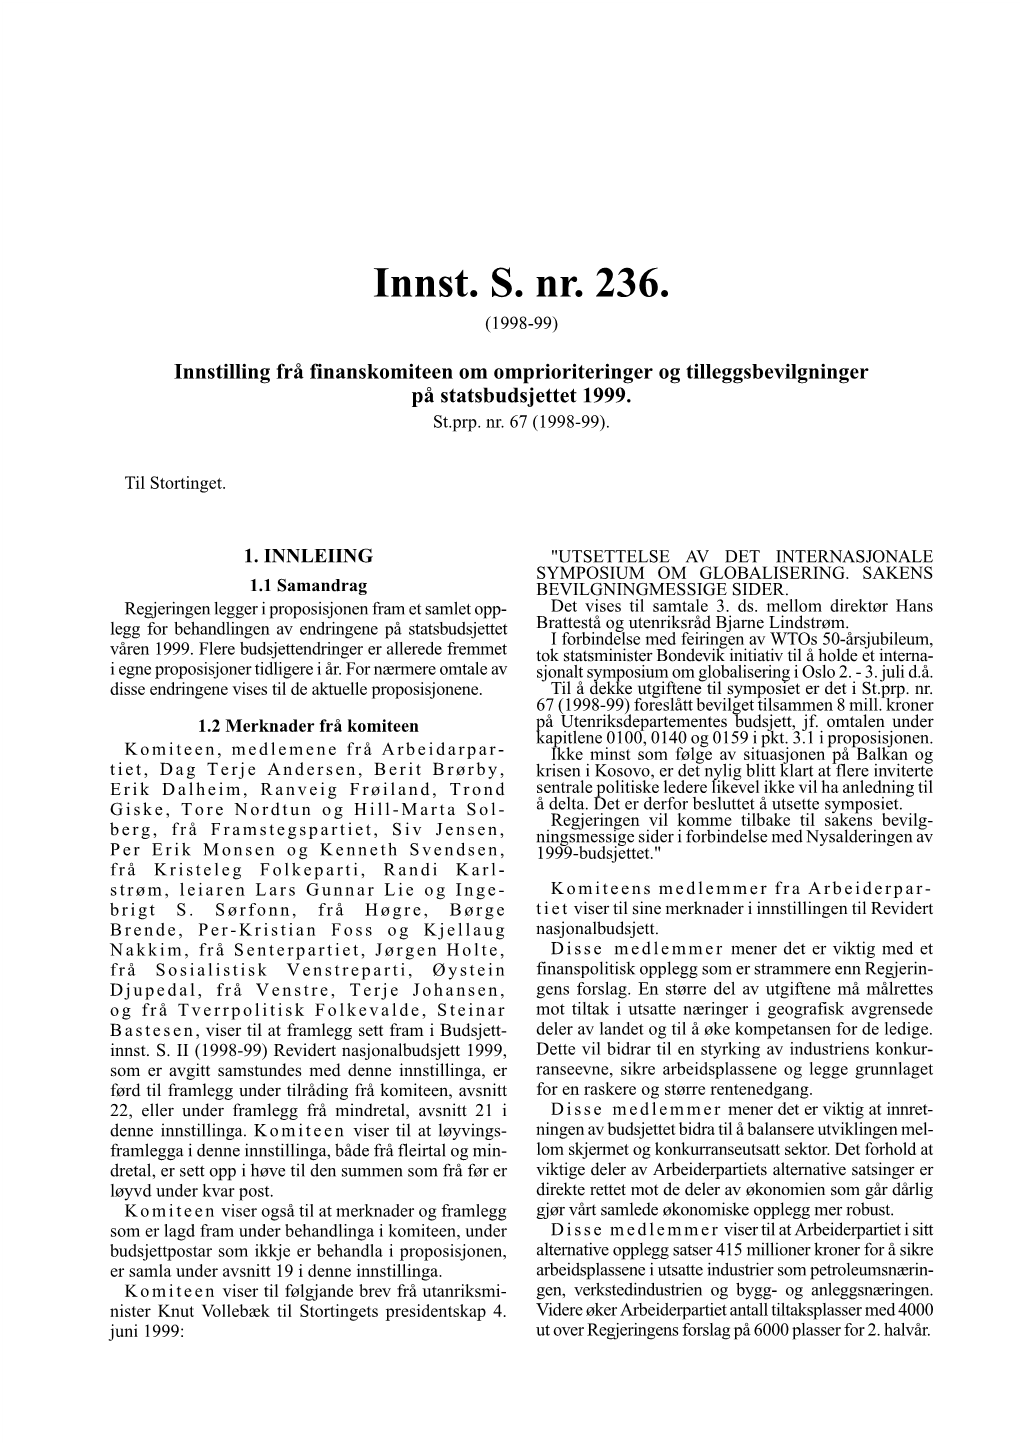 Innst. S. Nr. 236. (1998-99)